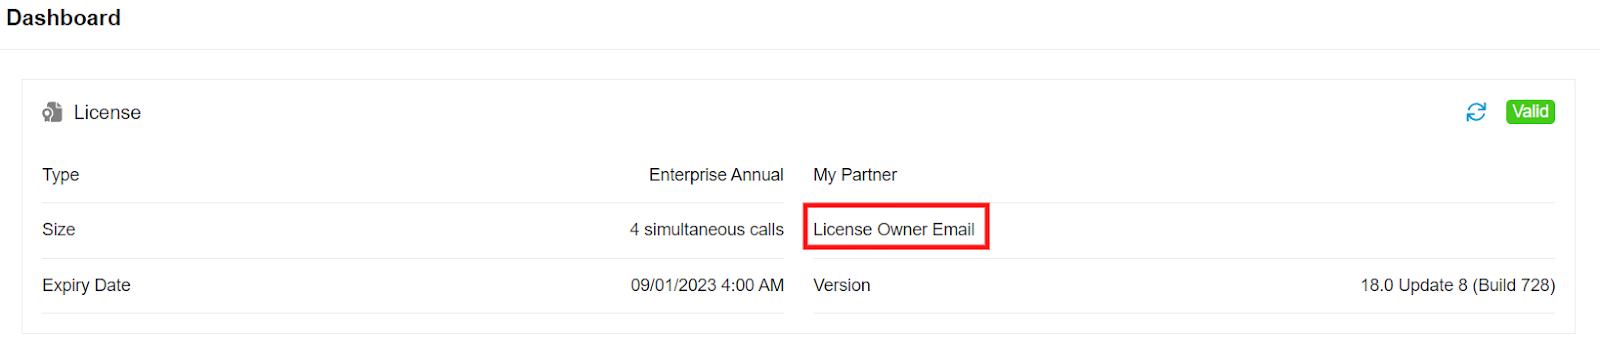 Atualização 8 do Web Client - E-mail do proprietário da licença